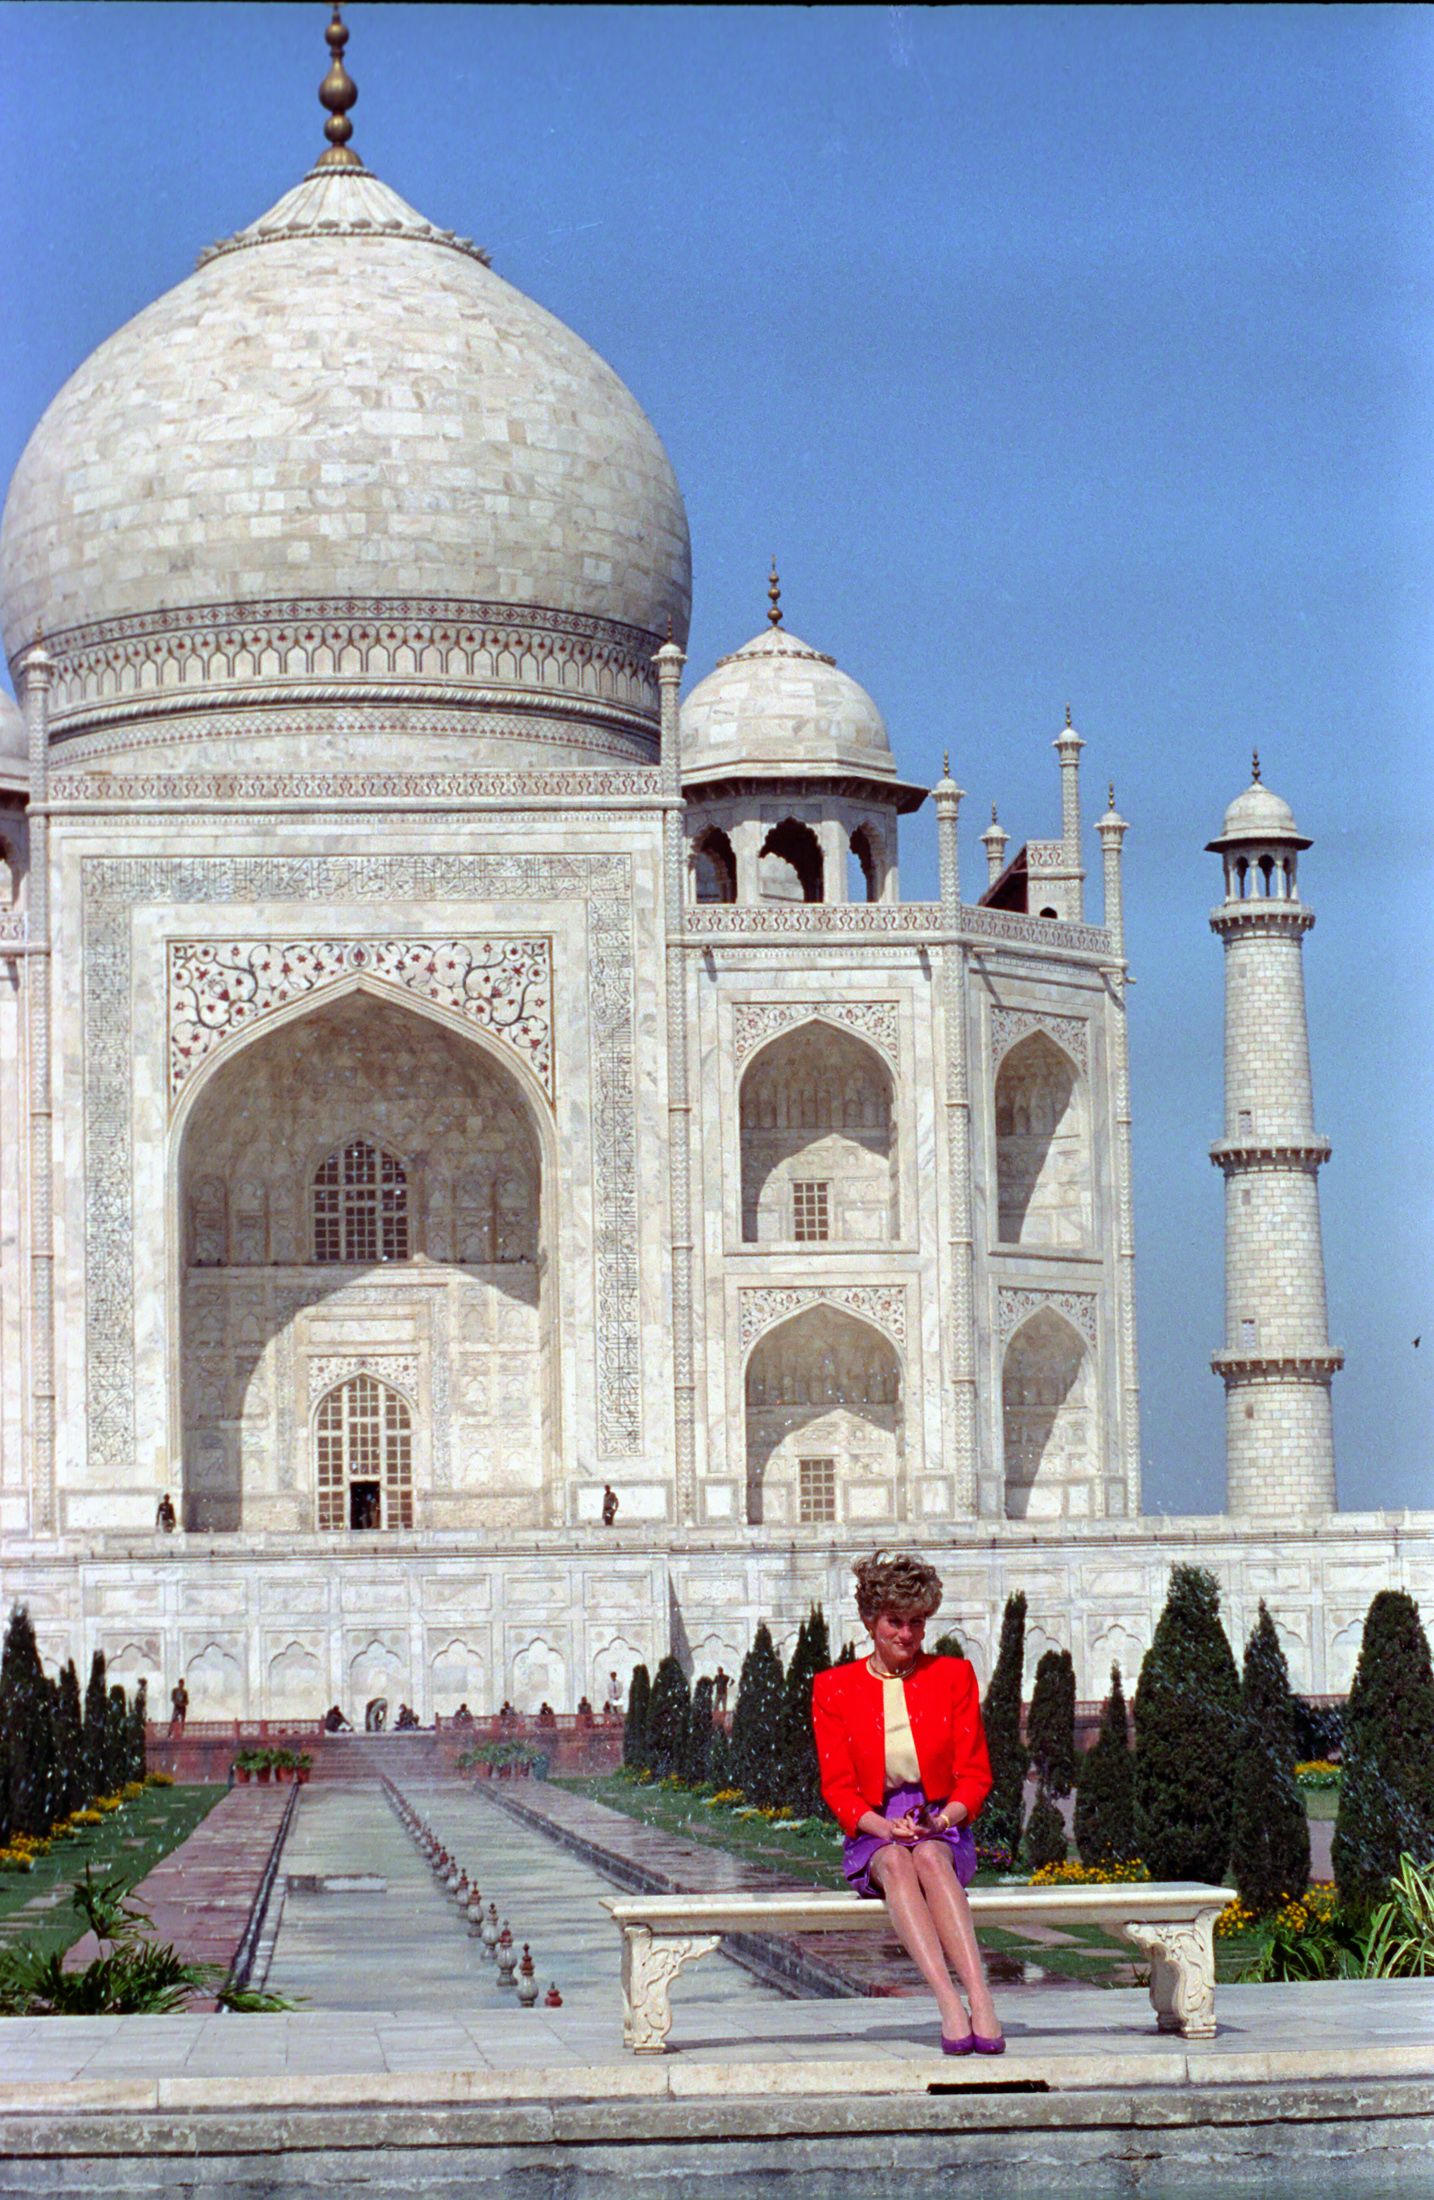 Lonely Di At The Taj Mahal 